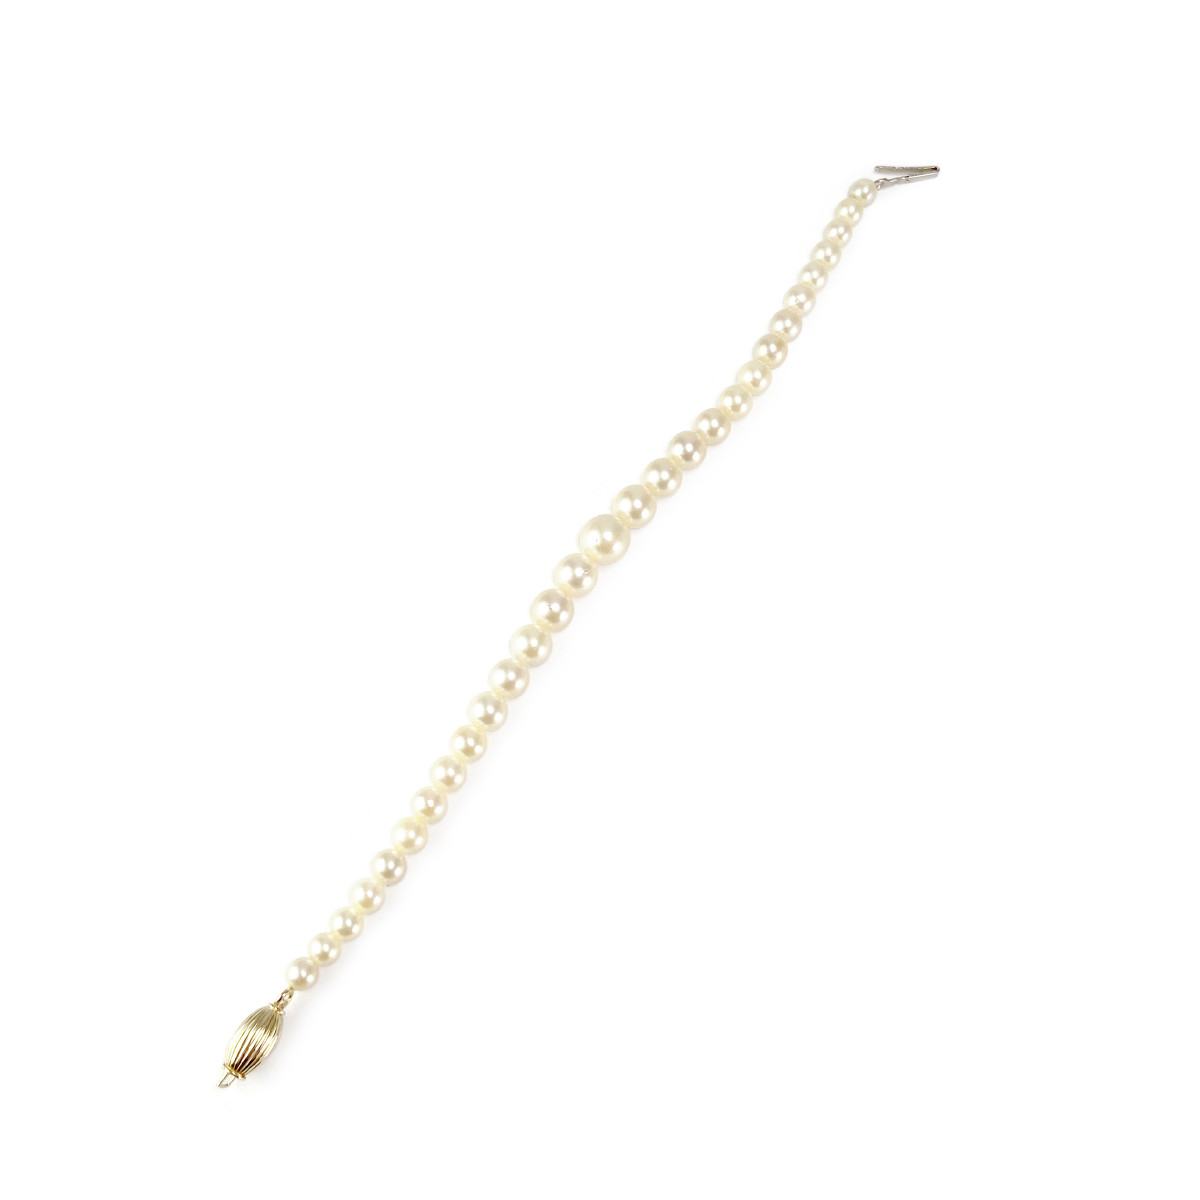 Bracelet d'occasion or 750 jaune perles de culture du Japon 19.5 cm - vue 3